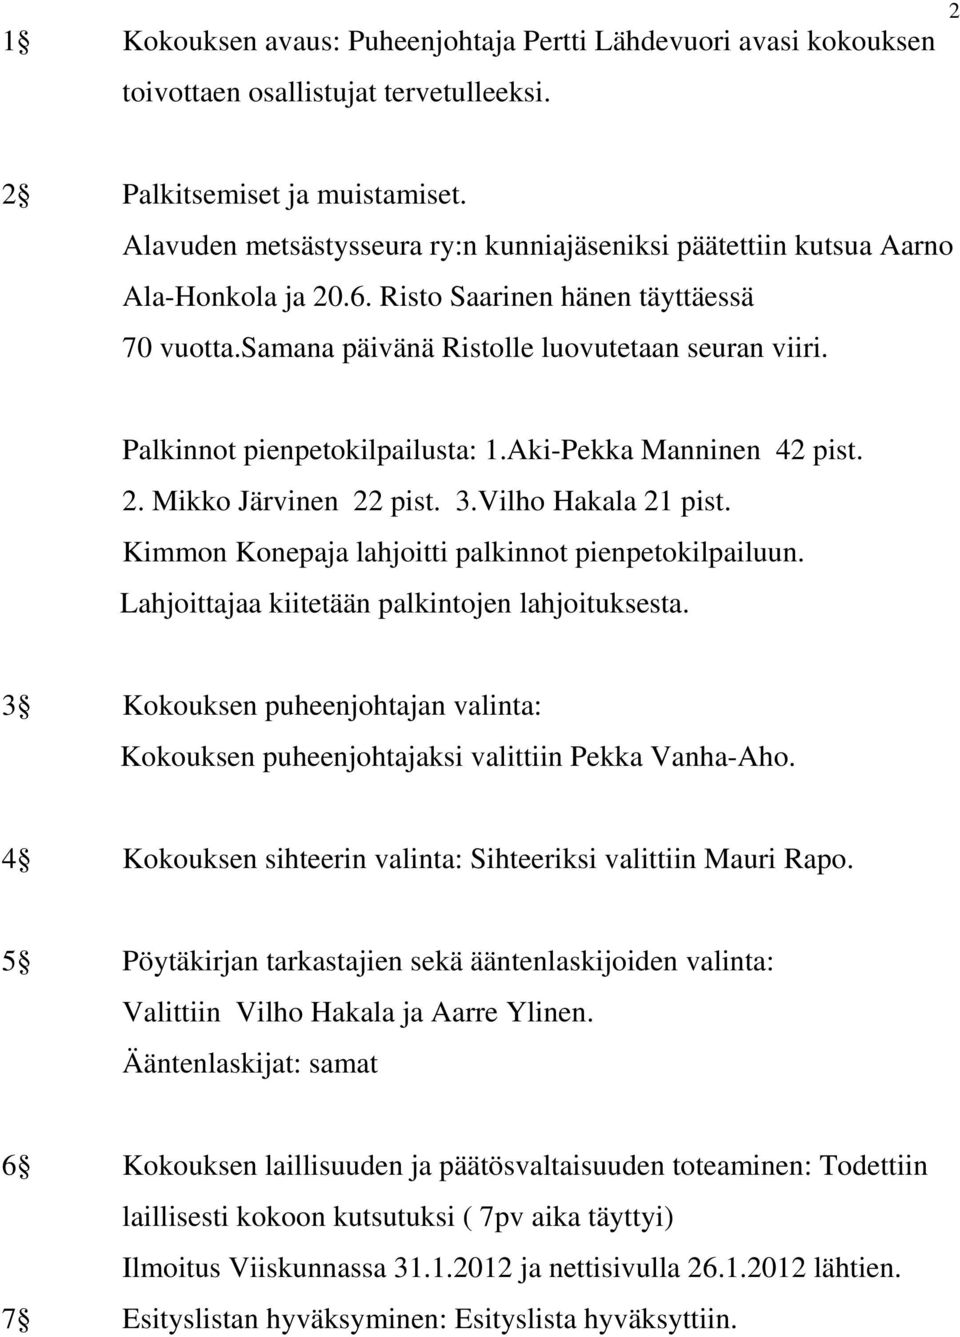 Palkinnot pienpetokilpailusta: 1.Aki-Pekka Manninen 42 pist. 2. Mikko Järvinen 22 pist. 3.Vilho Hakala 21 pist. Kimmon Konepaja lahjoitti palkinnot pienpetokilpailuun.